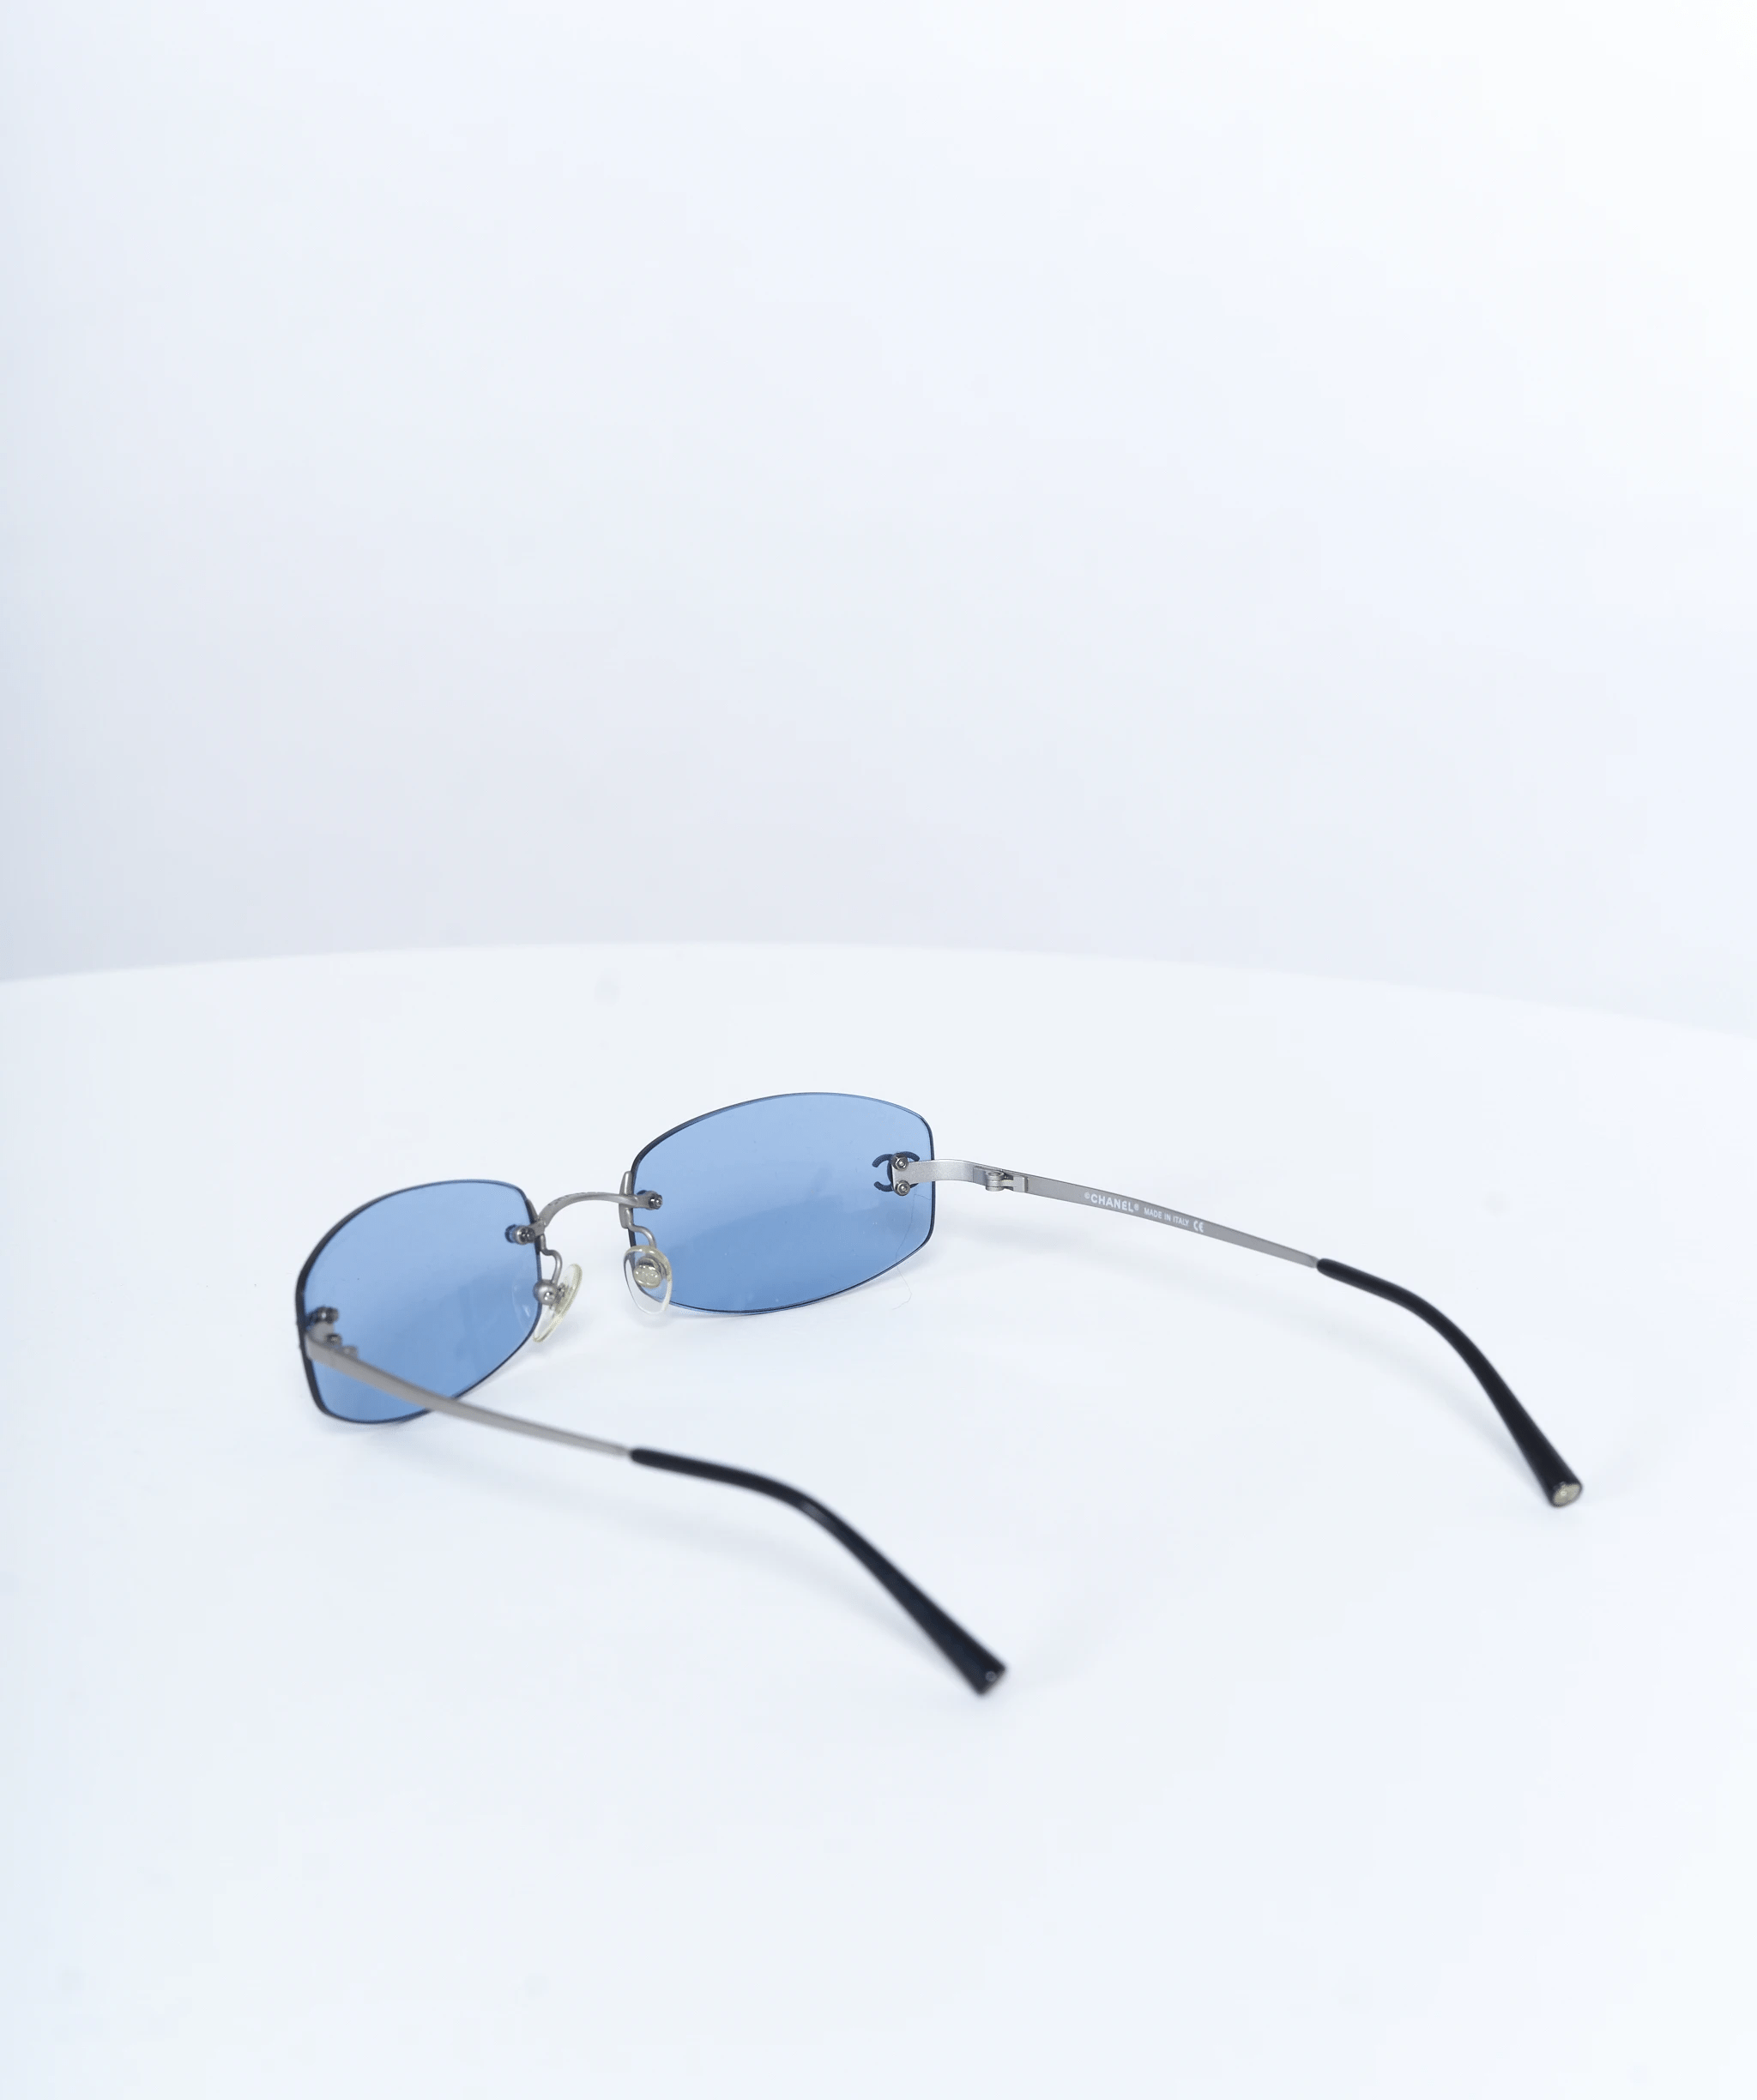 Chanel Chanel sunglasses blue cc 1990's